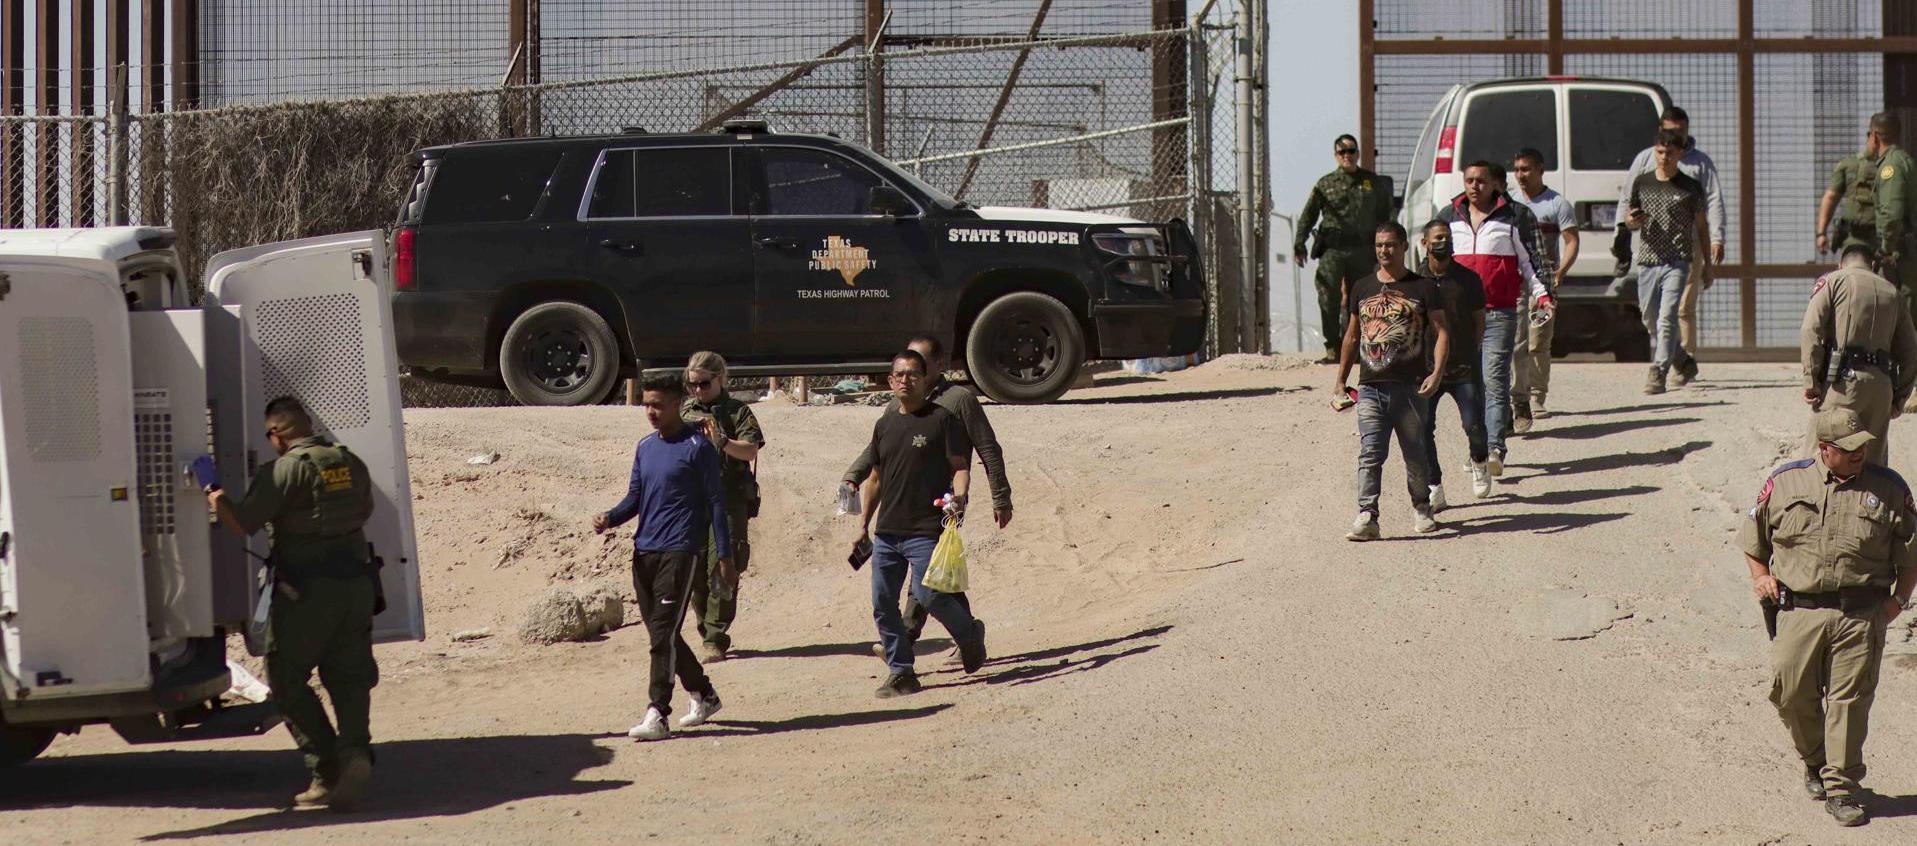 Migrantes detenidos son llevados este jueves por miembros de la Patrulla Fronteriza estadounidense a un vehículo, junto al muro fronterizo en El Paso, Texas 